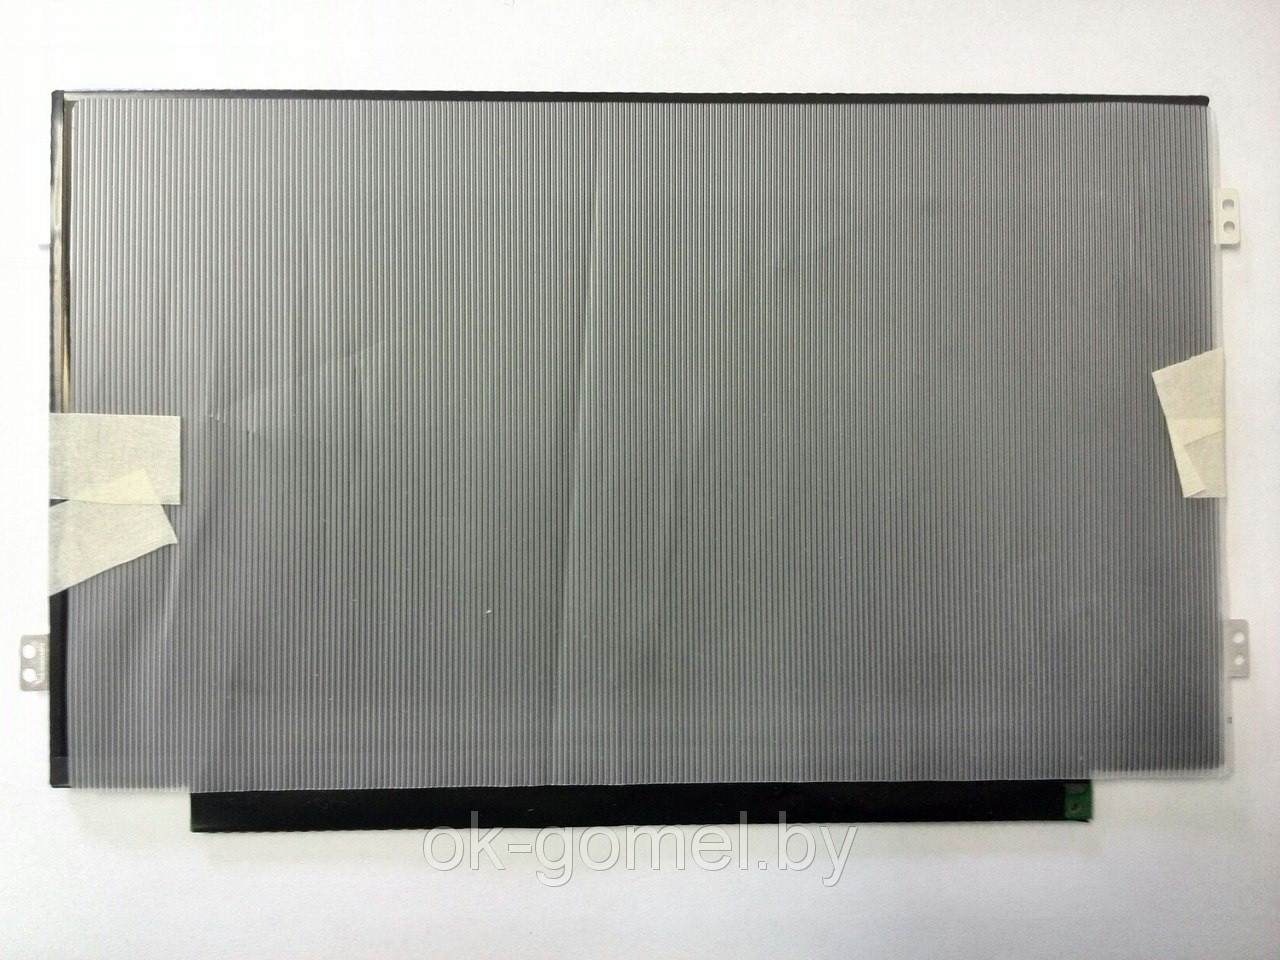 Замена матрицы (экран) для ноутбука 10,1" 1024x600, 40 pin SLIM LED